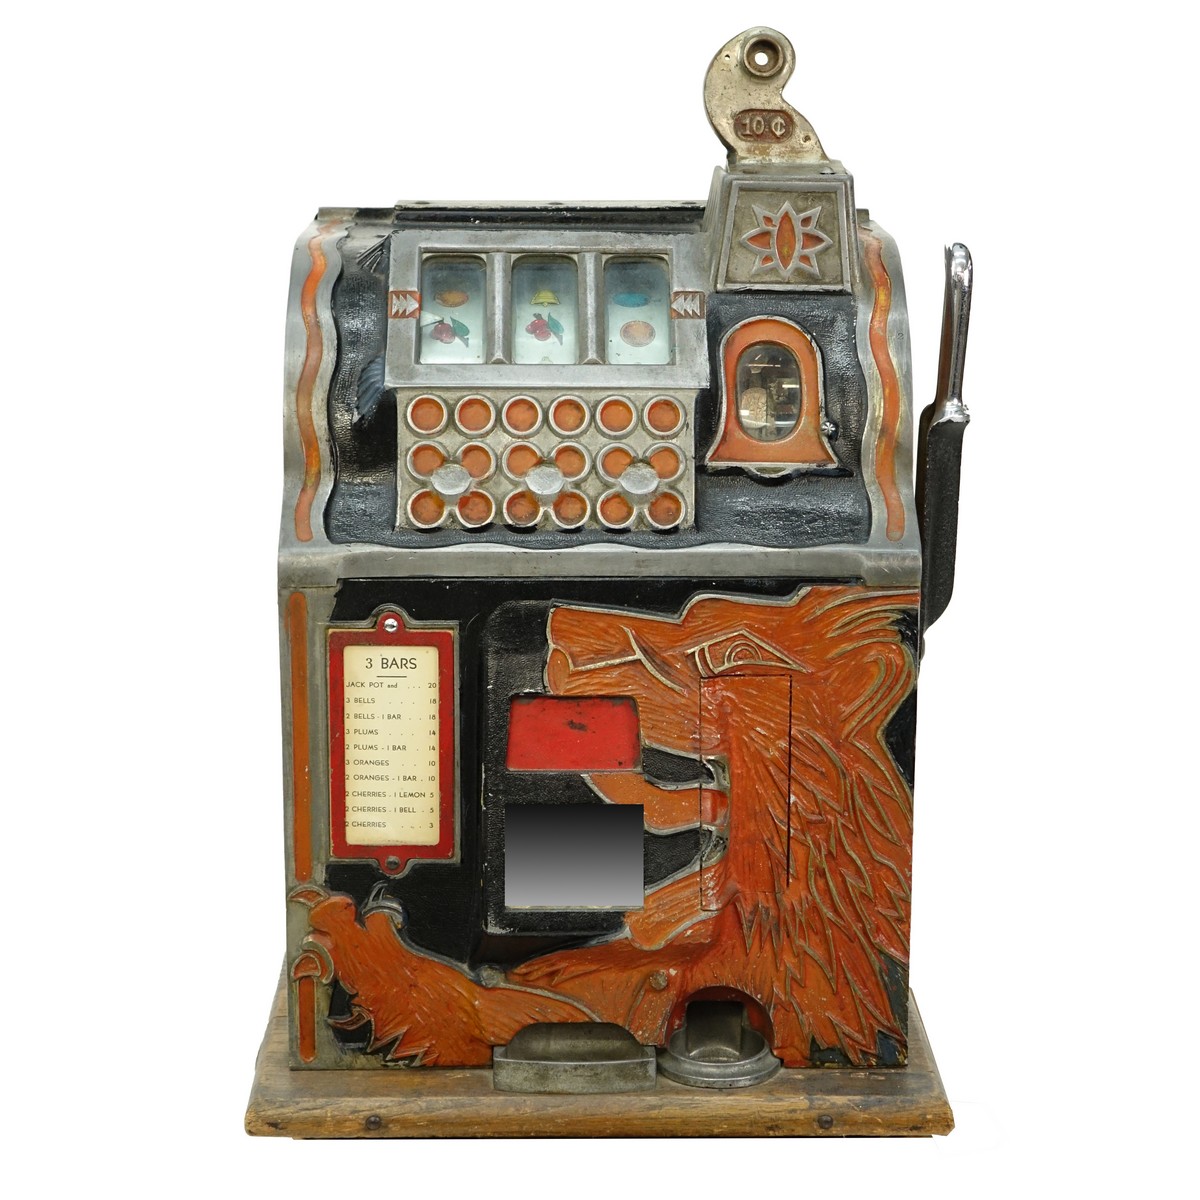 Antique slot machines for sale illinois craigslist